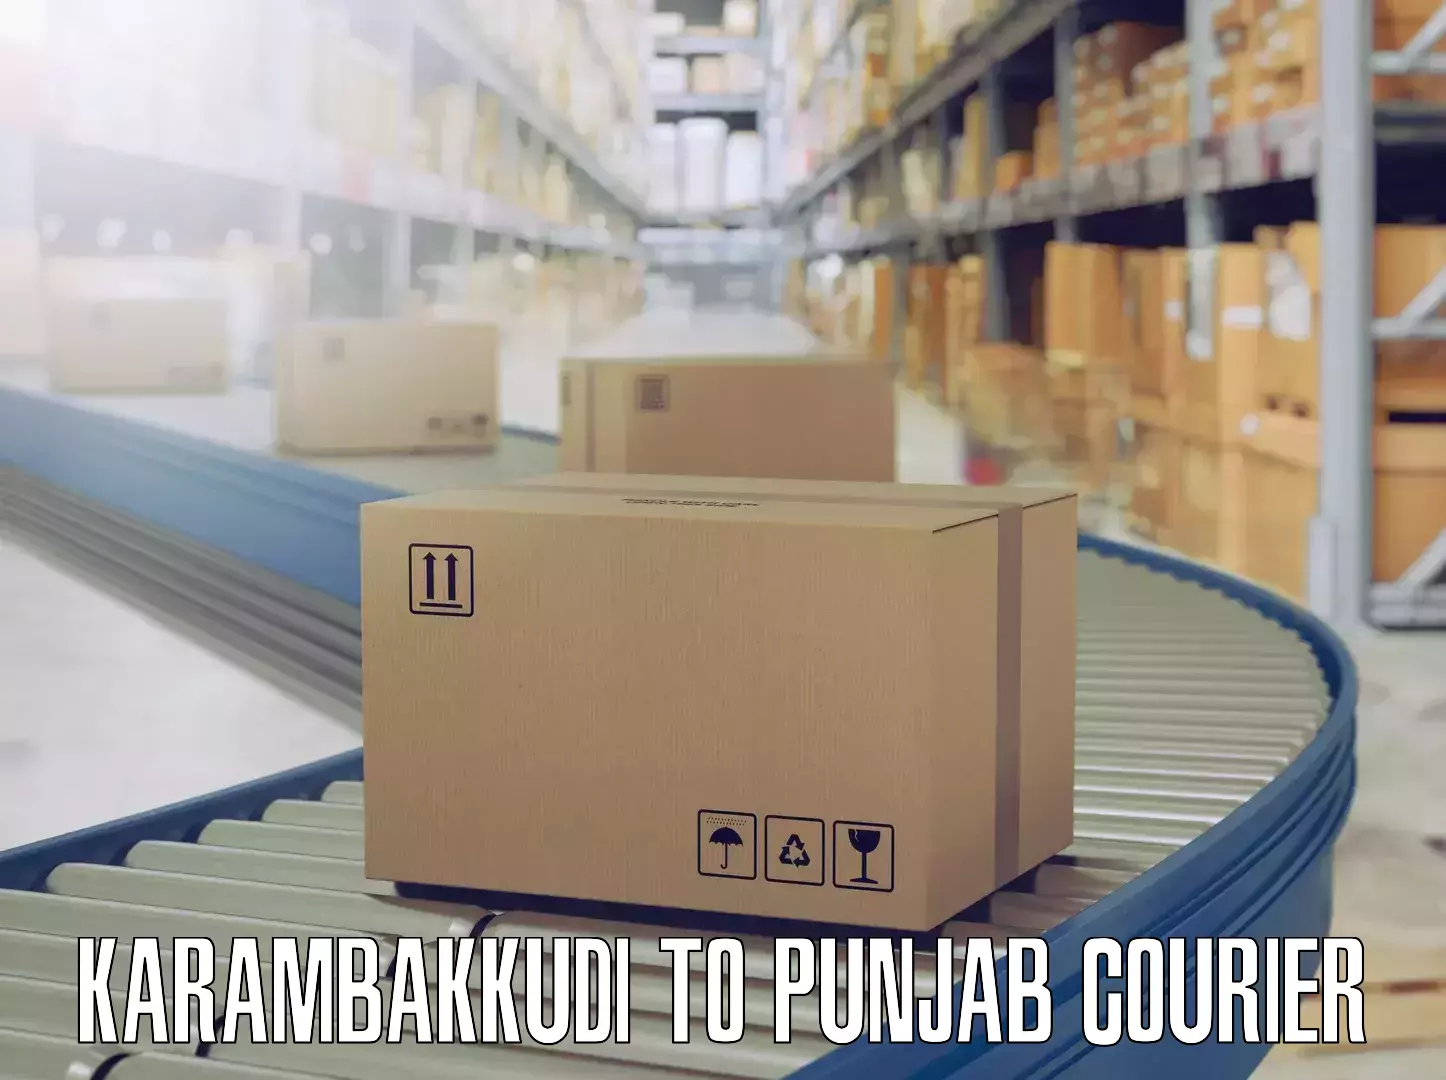 Personalized relocation plans Karambakkudi to Punjab